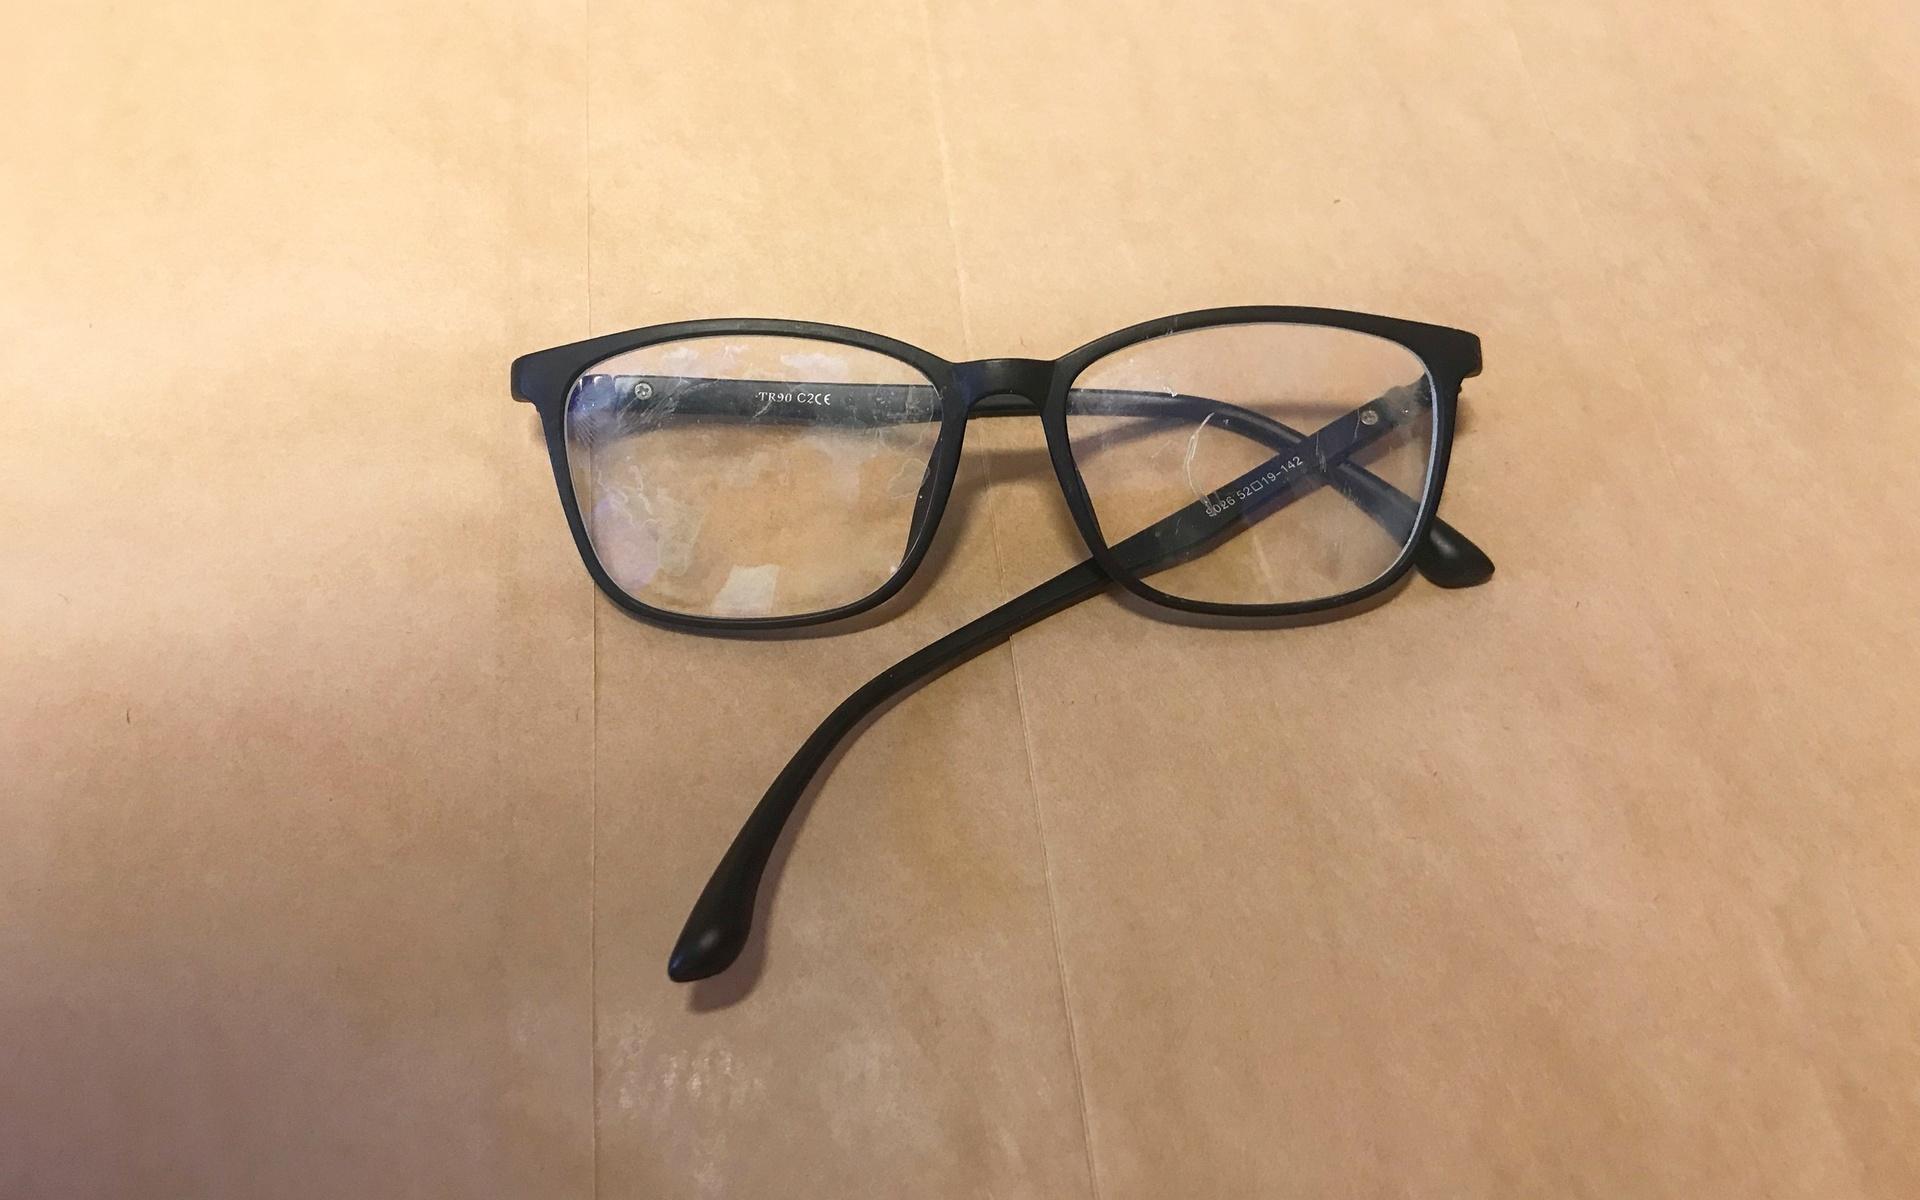 Glasögonen som också hittades på platsen.